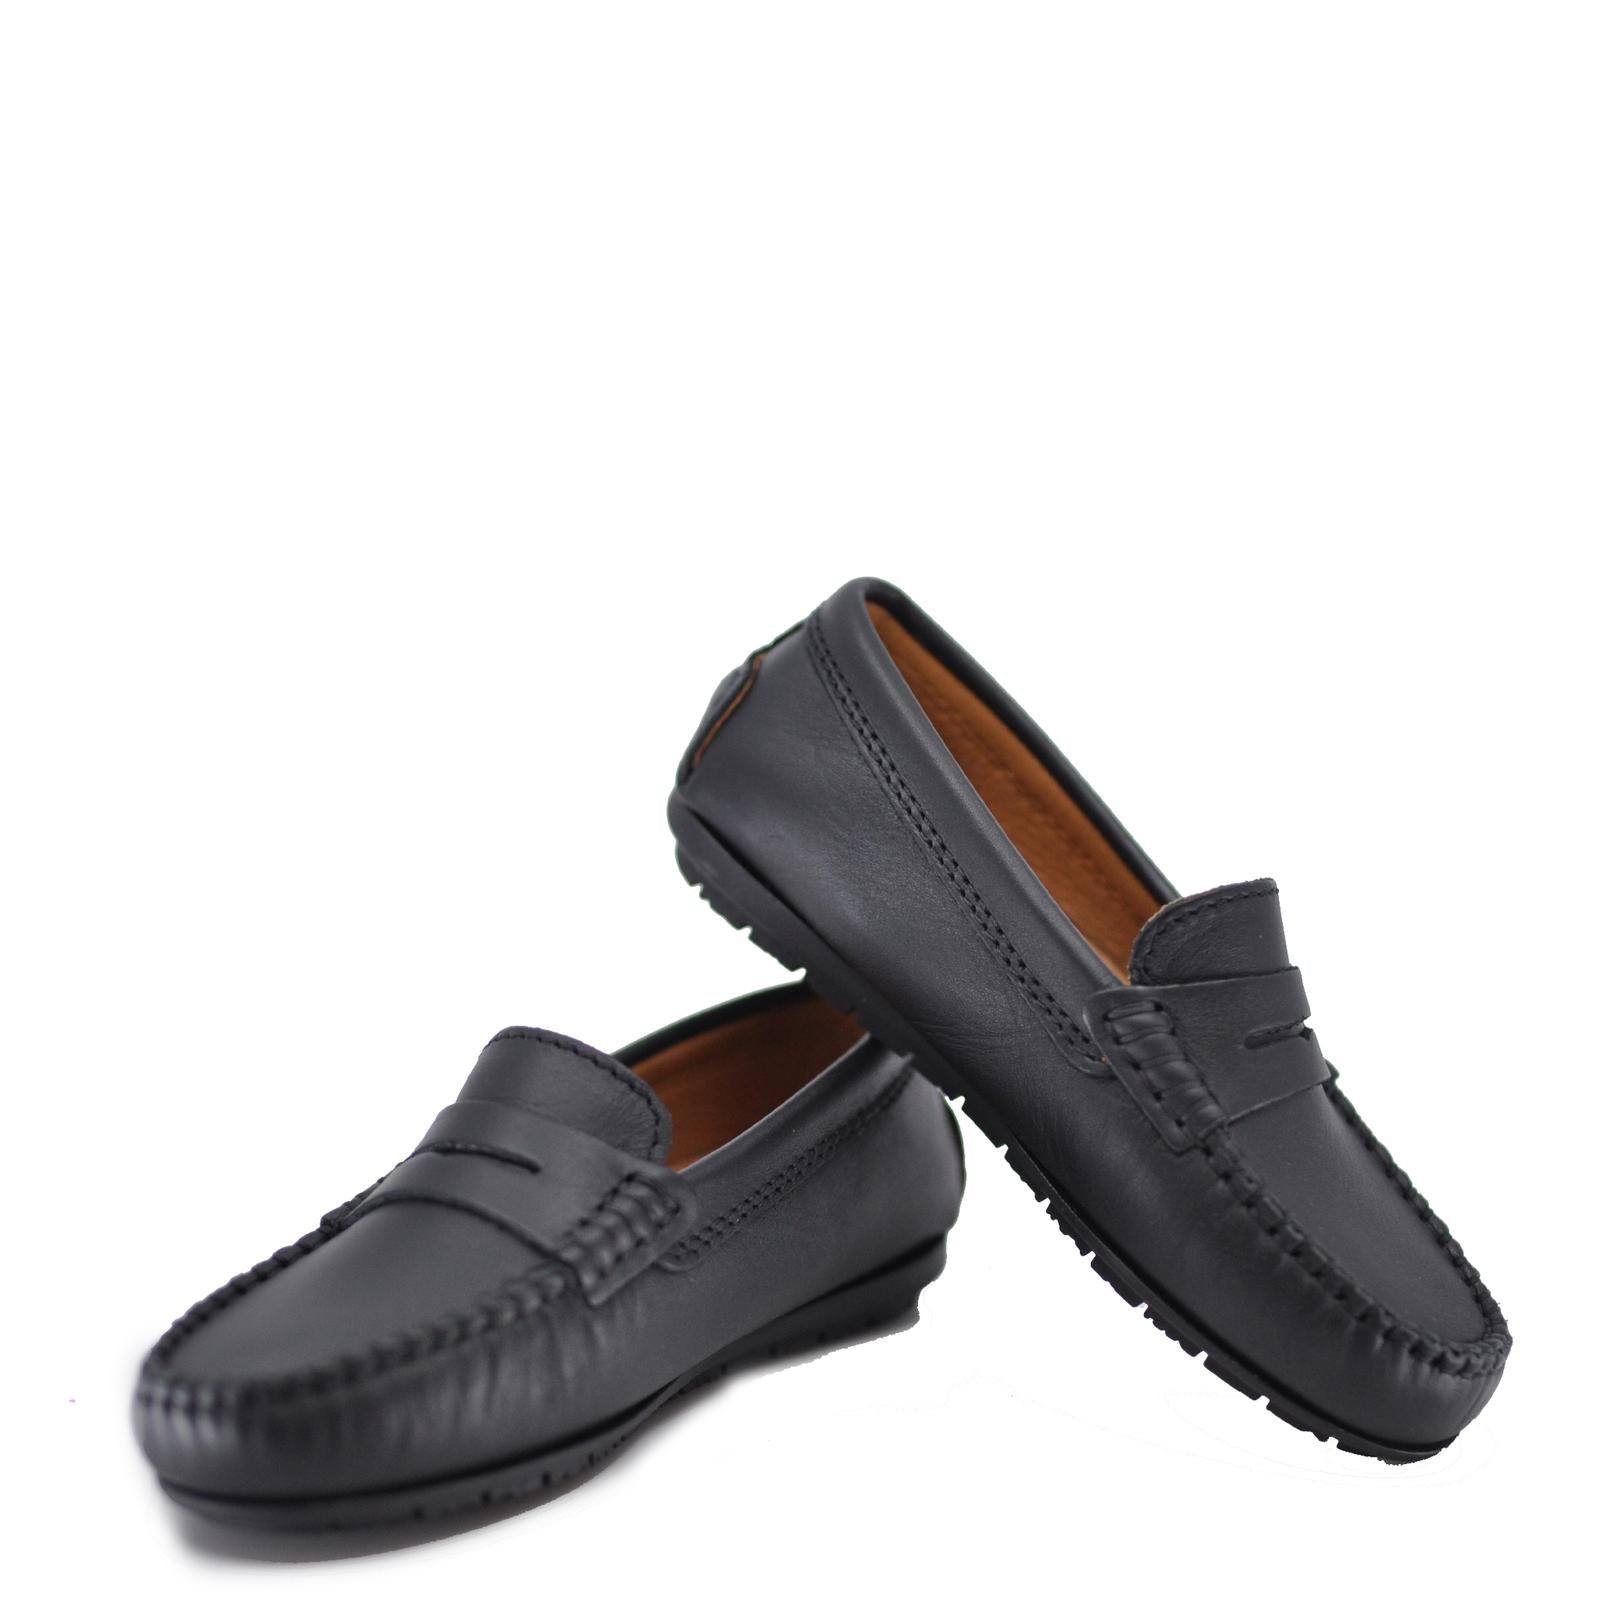 Atlanta Mocassin Black Penny Loafer-Tassel Children Shoes